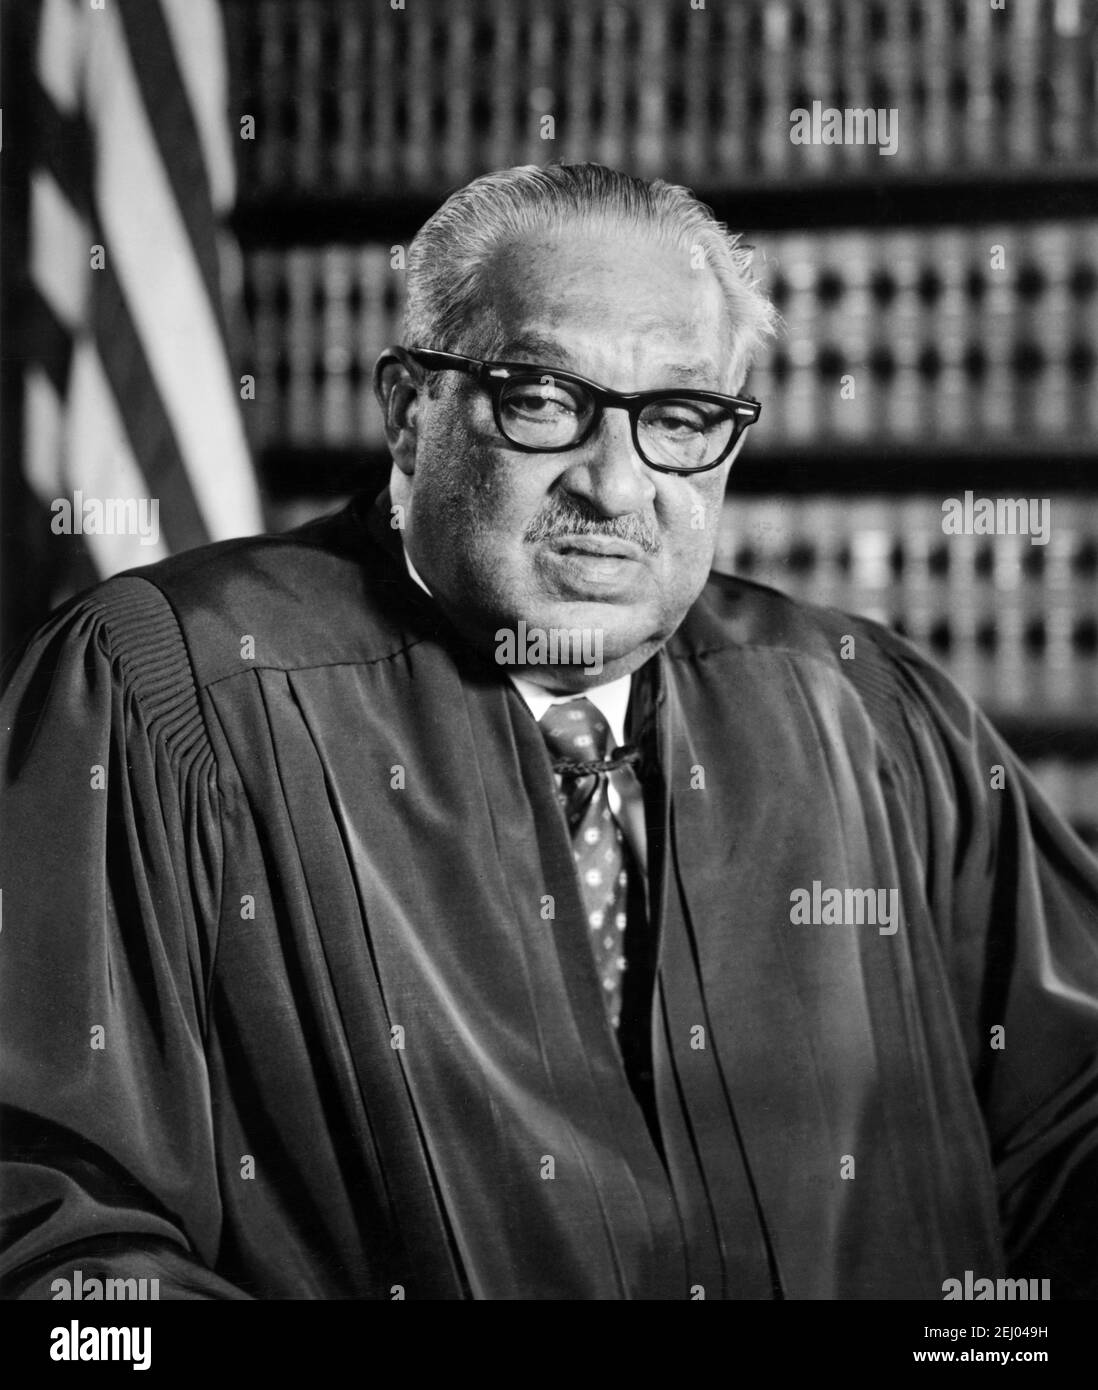 Thurgood Marshall. Ritratto della prima giustizia afroamericana a servire alla Corte Suprema degli Stati Uniti, Thurgood Marshall (1908-1993) . Fotografia ufficiale, 1976 Foto Stock